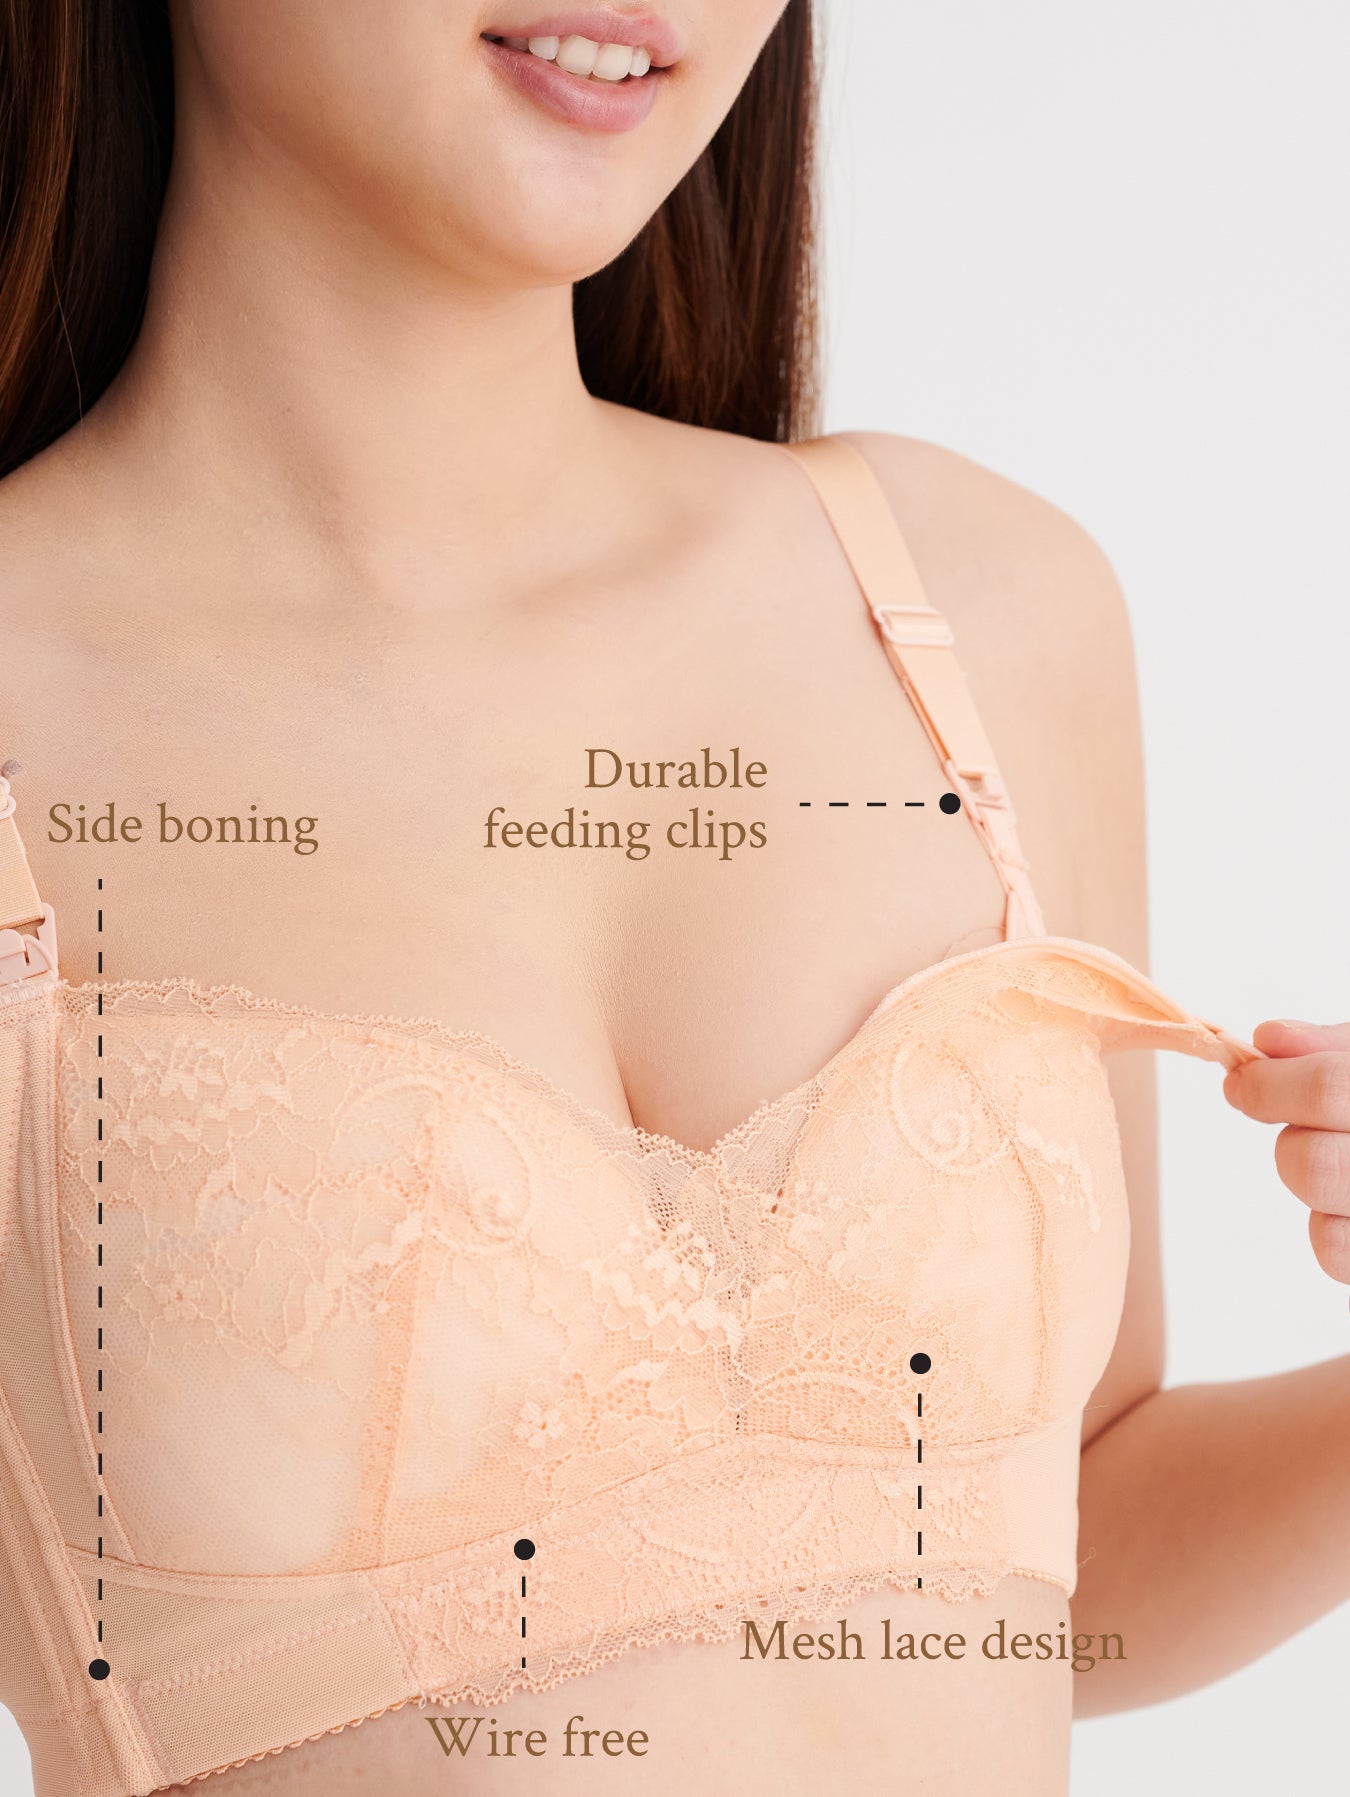 Comfortable nursing bra with premium materials